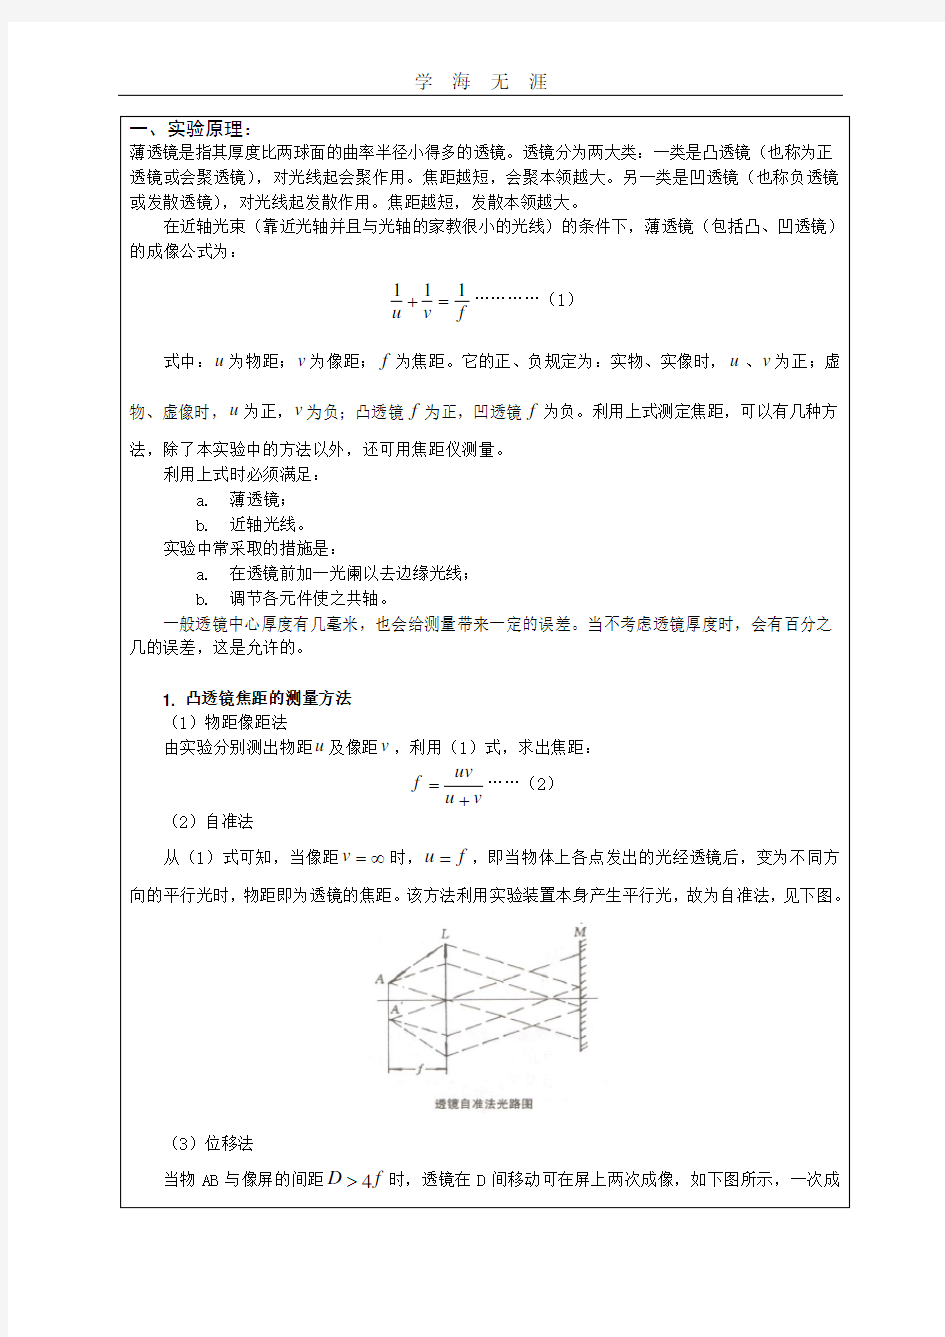 薄透镜焦距的测量(完整版).pdf